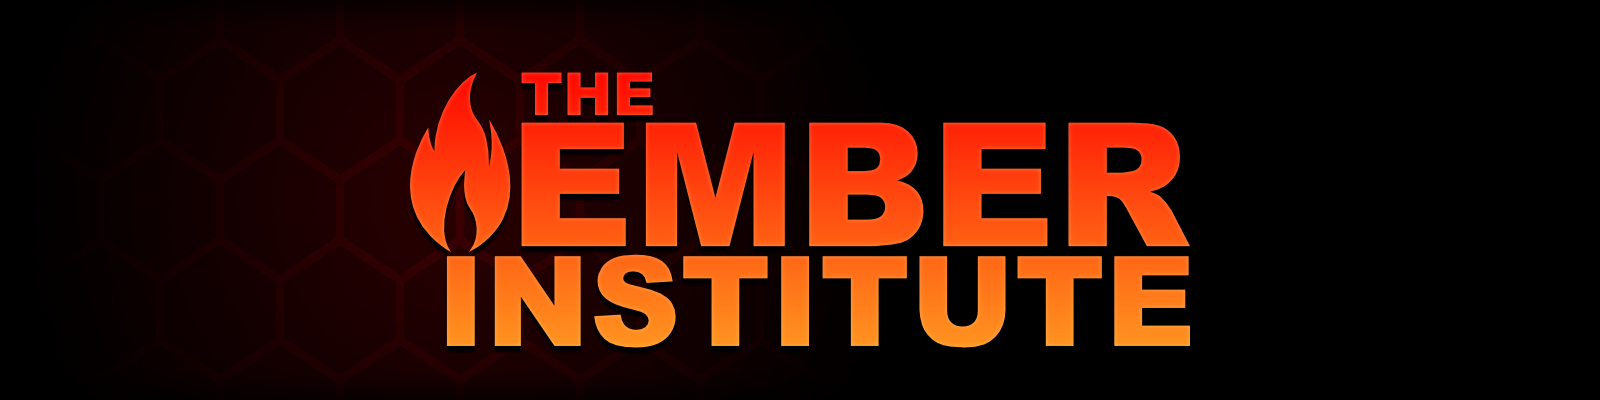 The Ember Institute [v0.0.1.7] main image